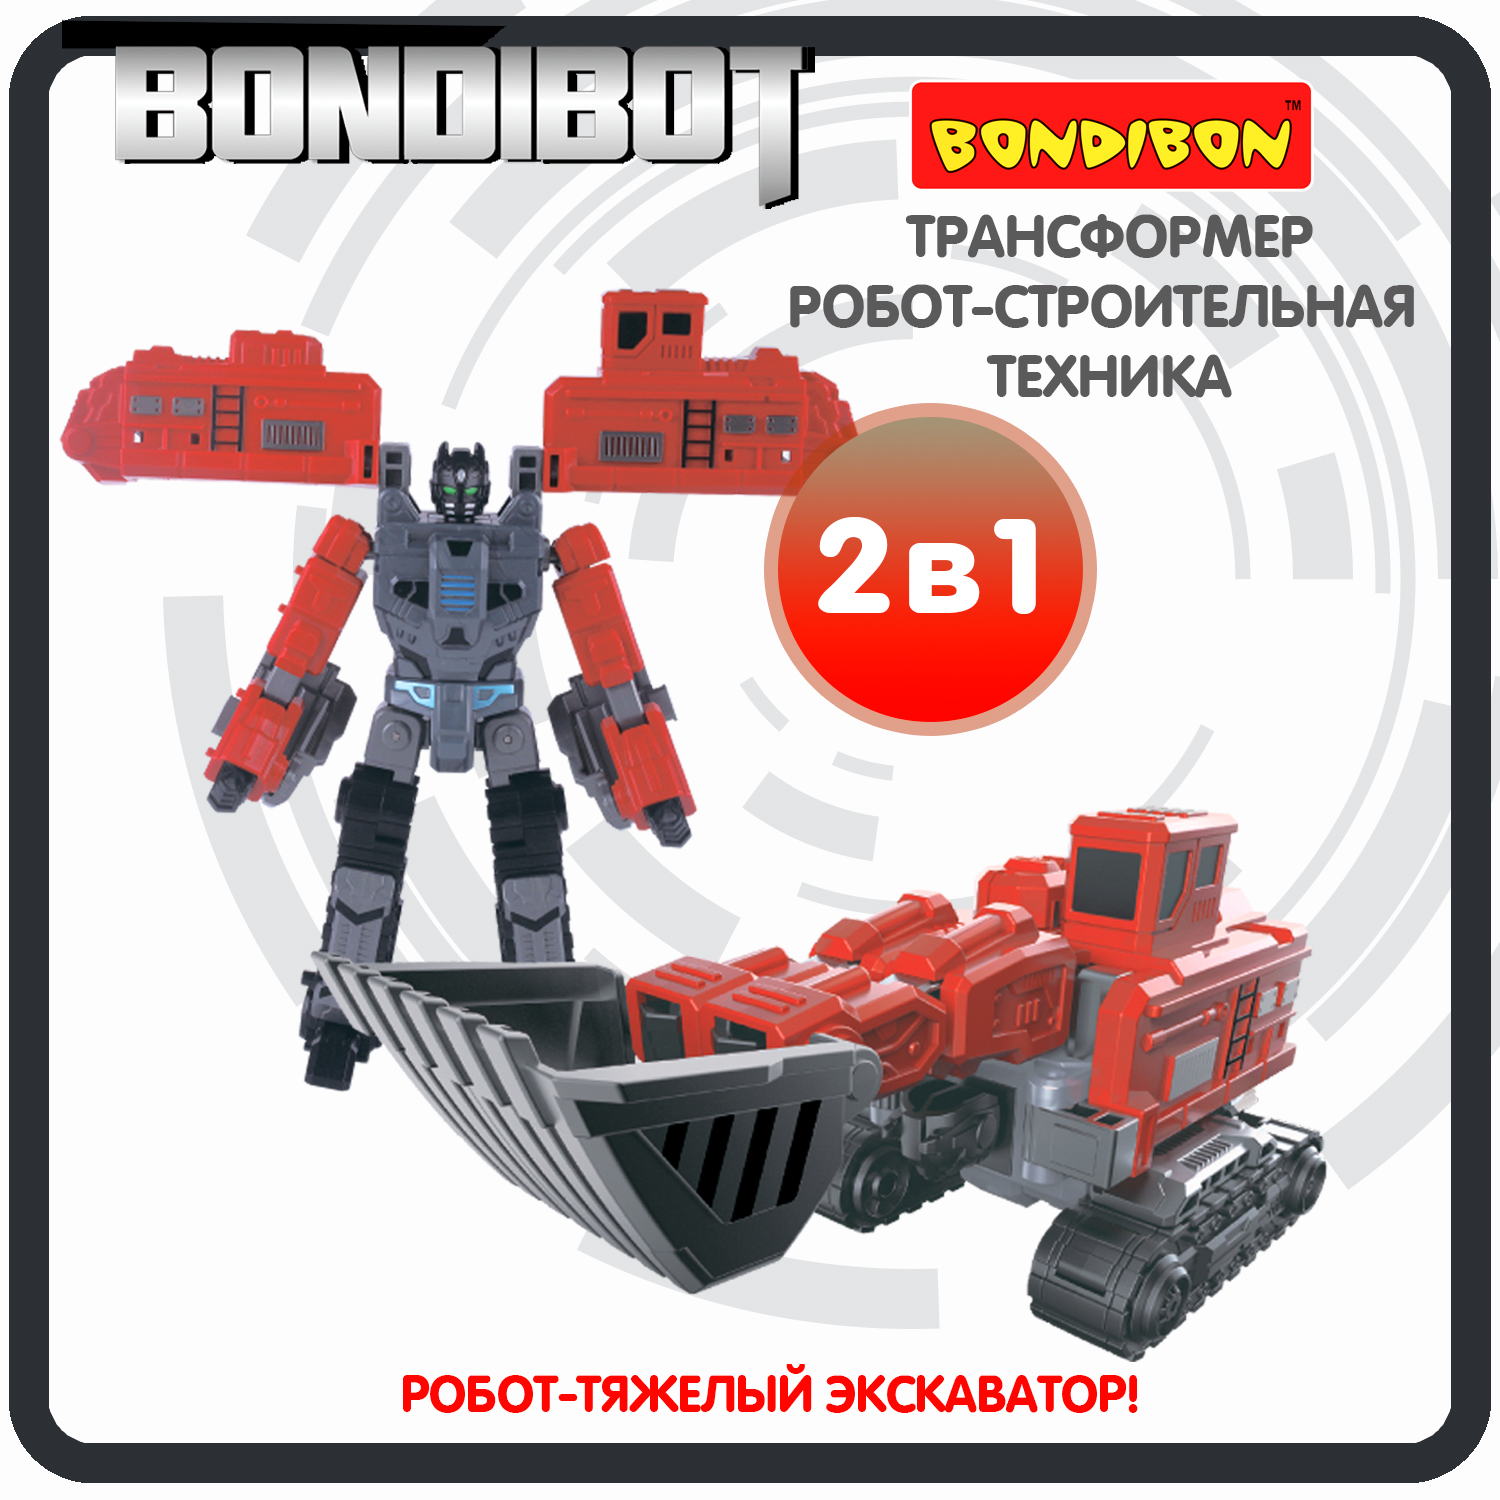 Трансформер робот-строительная техника, 2в1 BONDIBOT Bondibon, тяжёлый экскаватор / ВВ6057